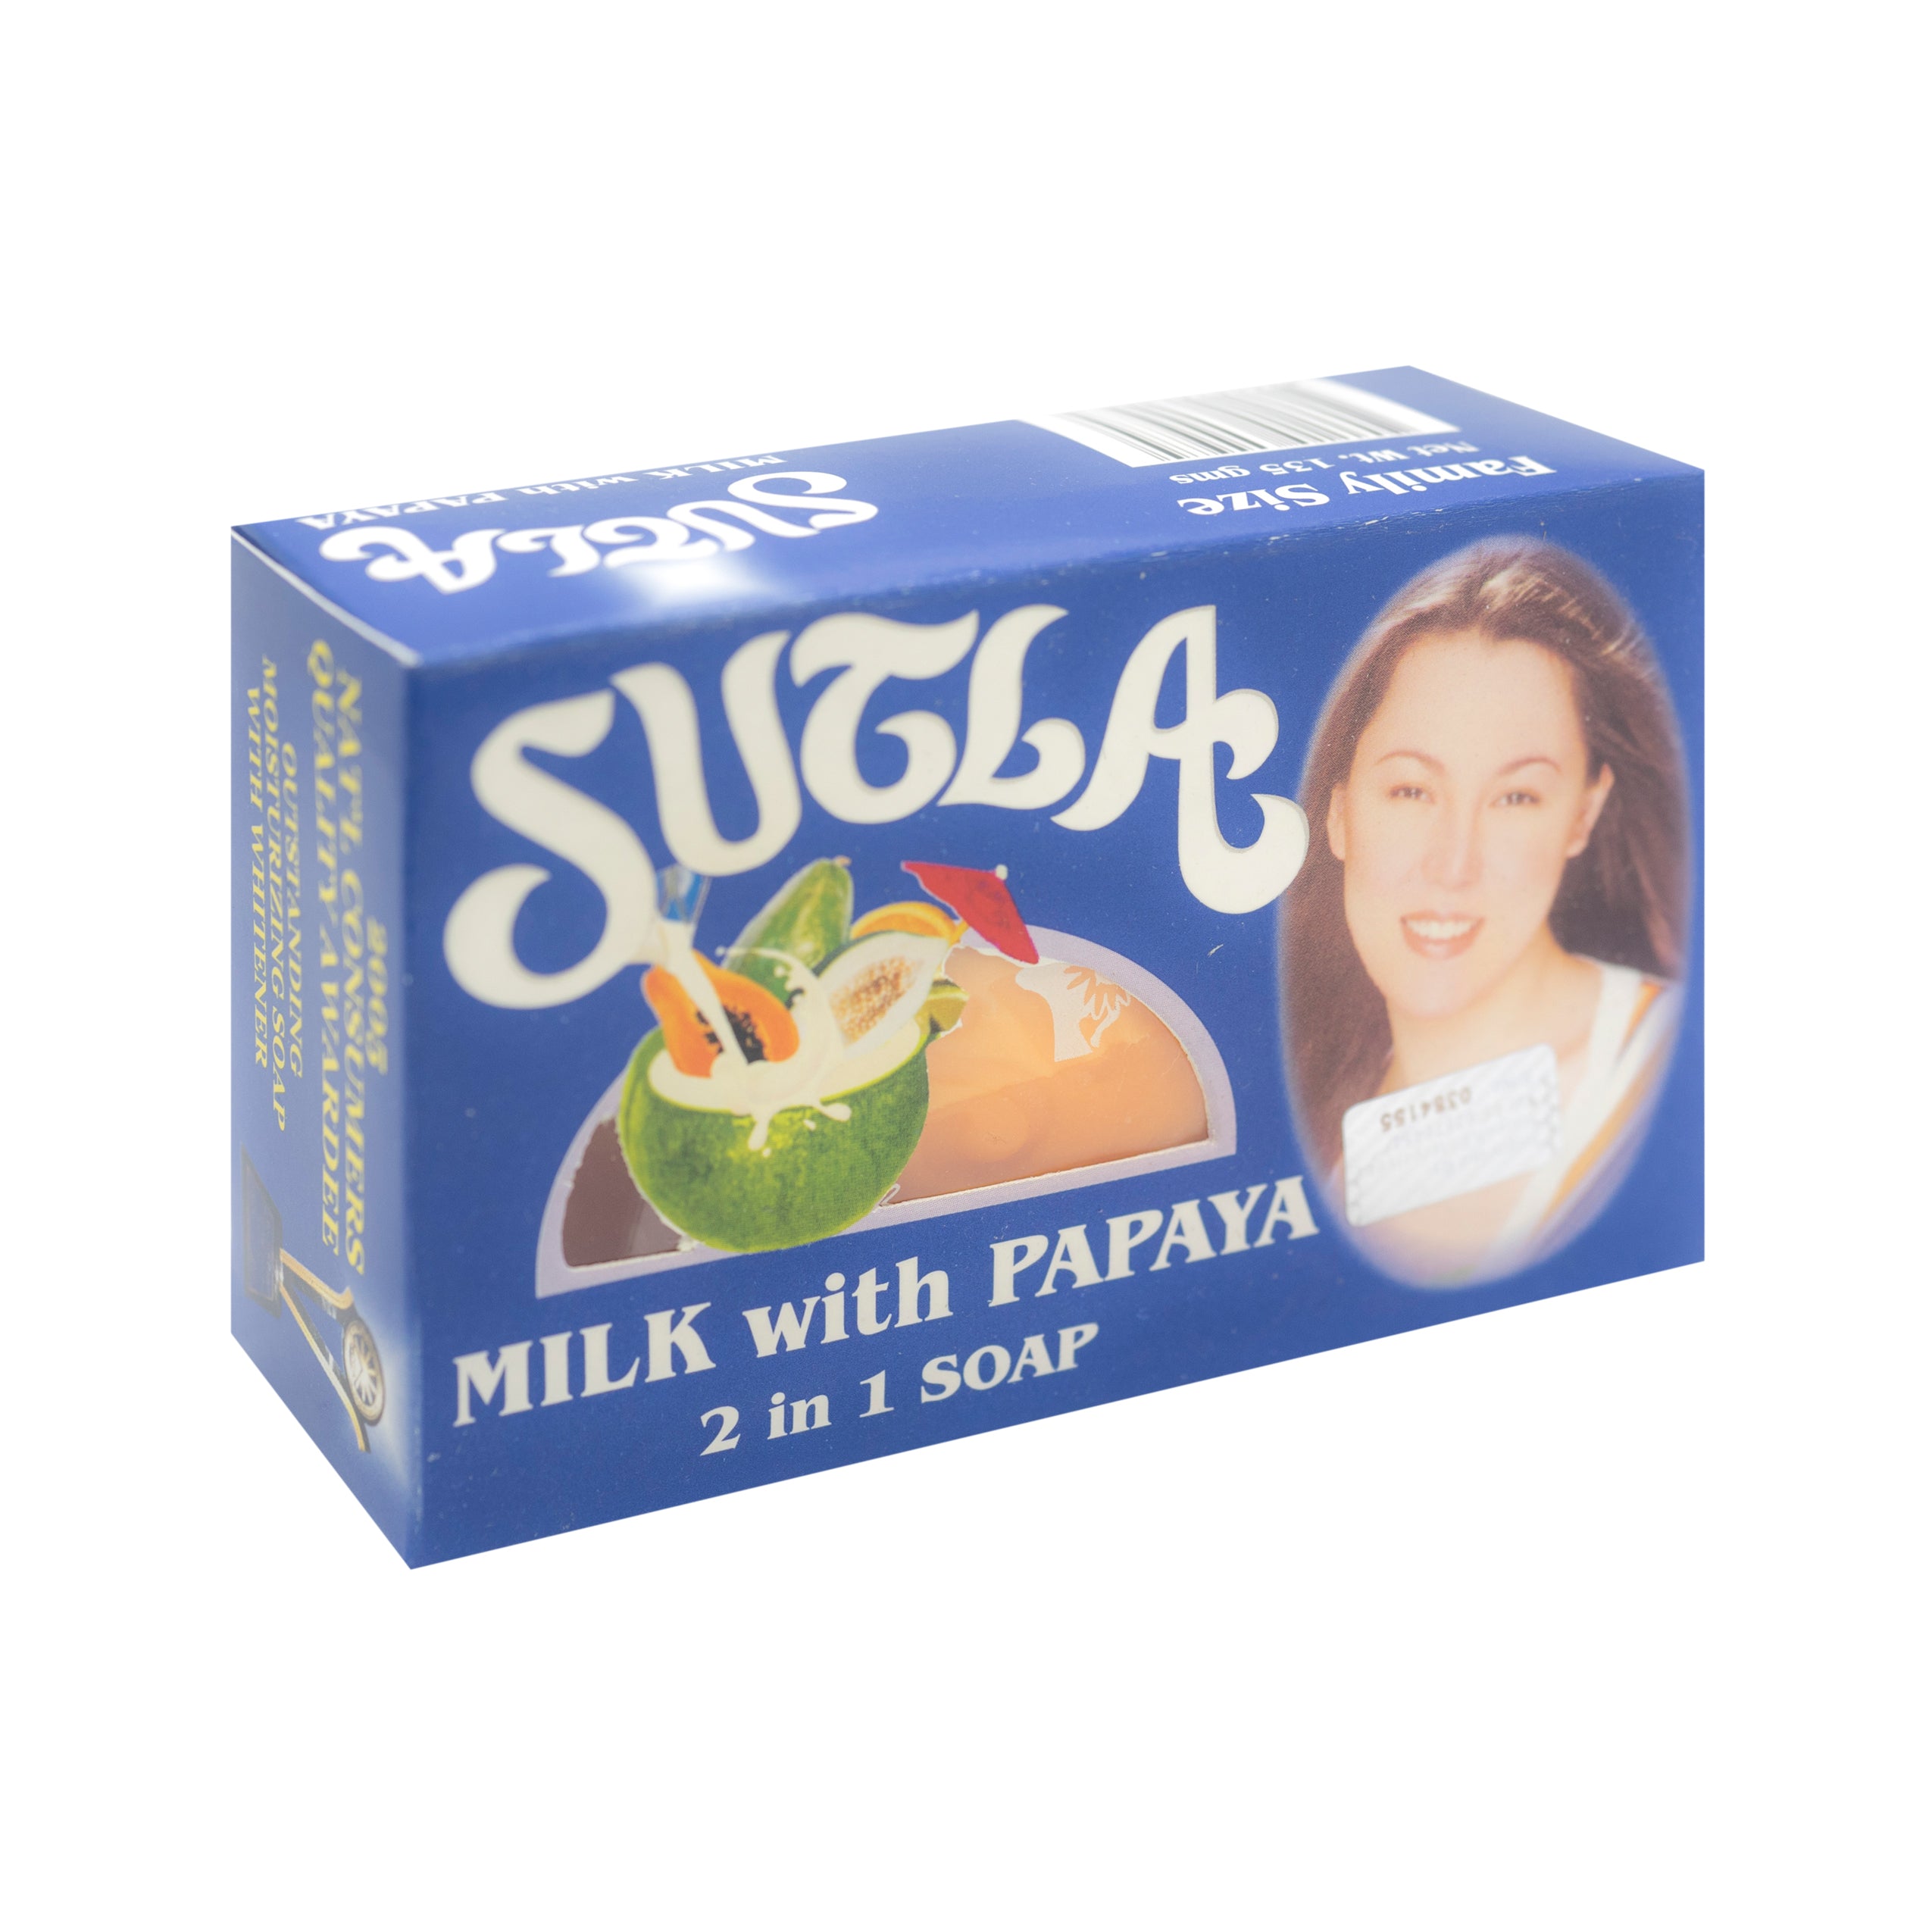 Sutla, Milk With Papaya, 2 in 1 Soap, 135g